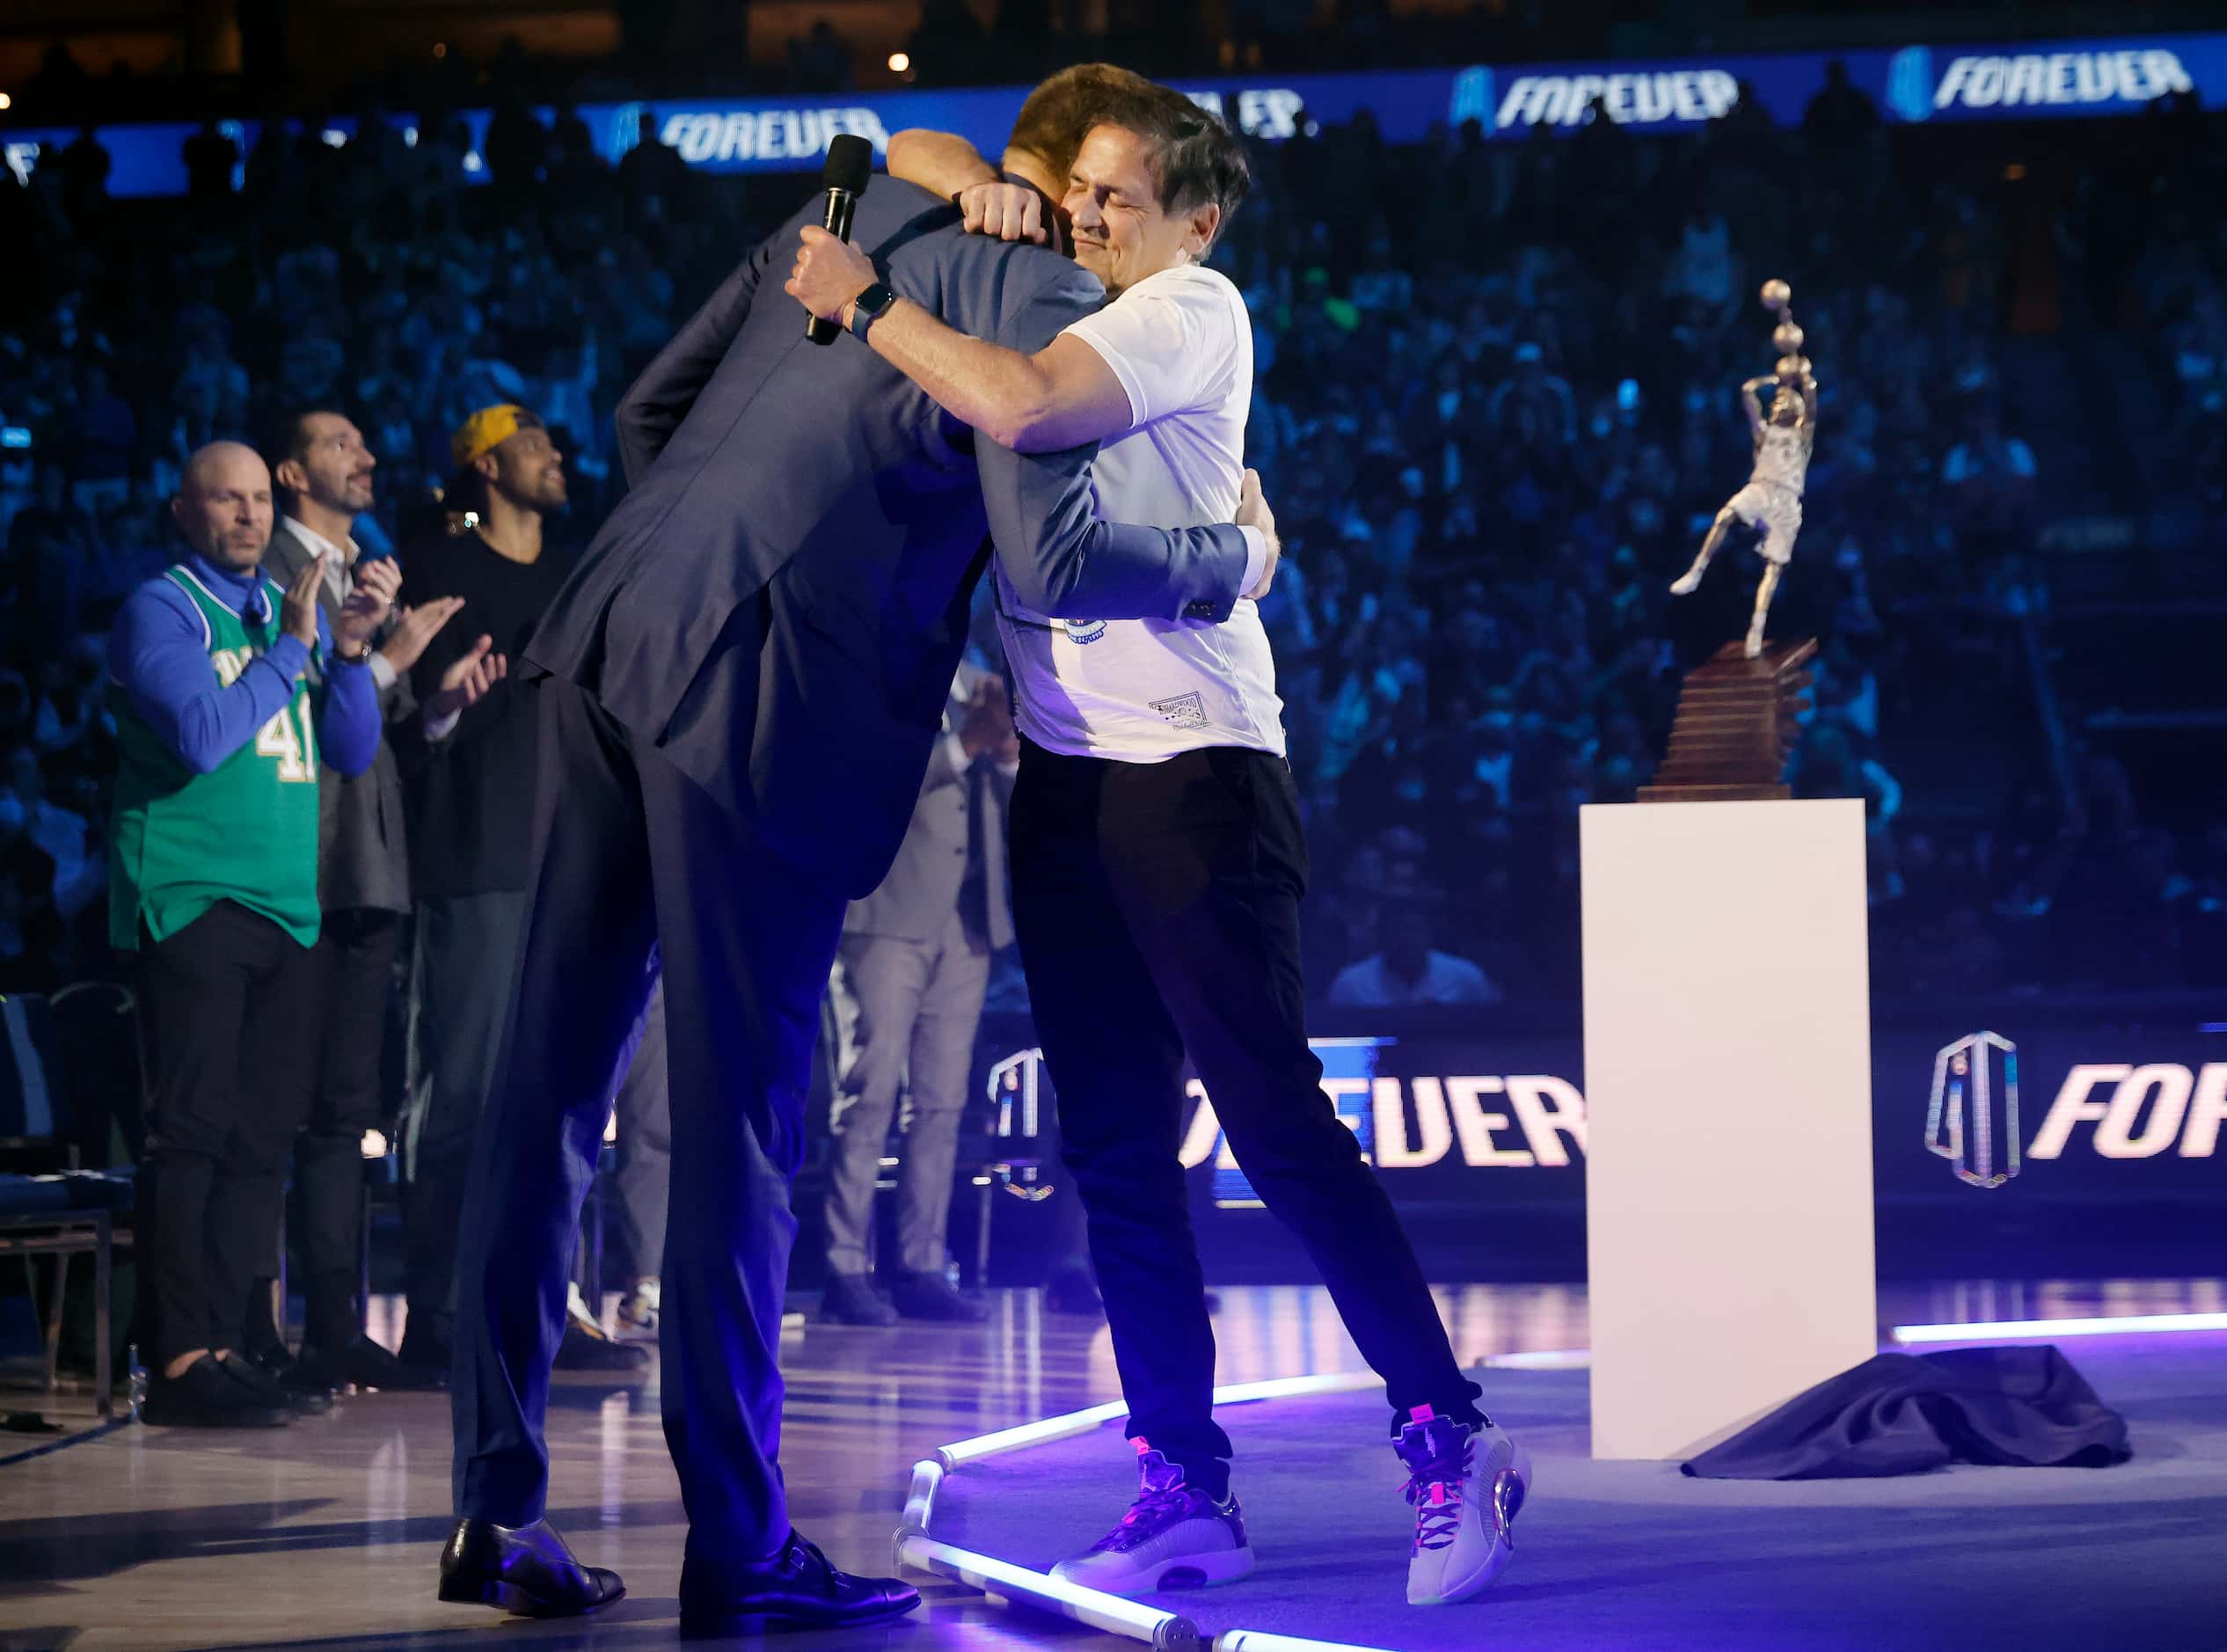 After making some remarks, former Dallas Mavericks All-Star Dirk Nowitzki (left) gives a hug...